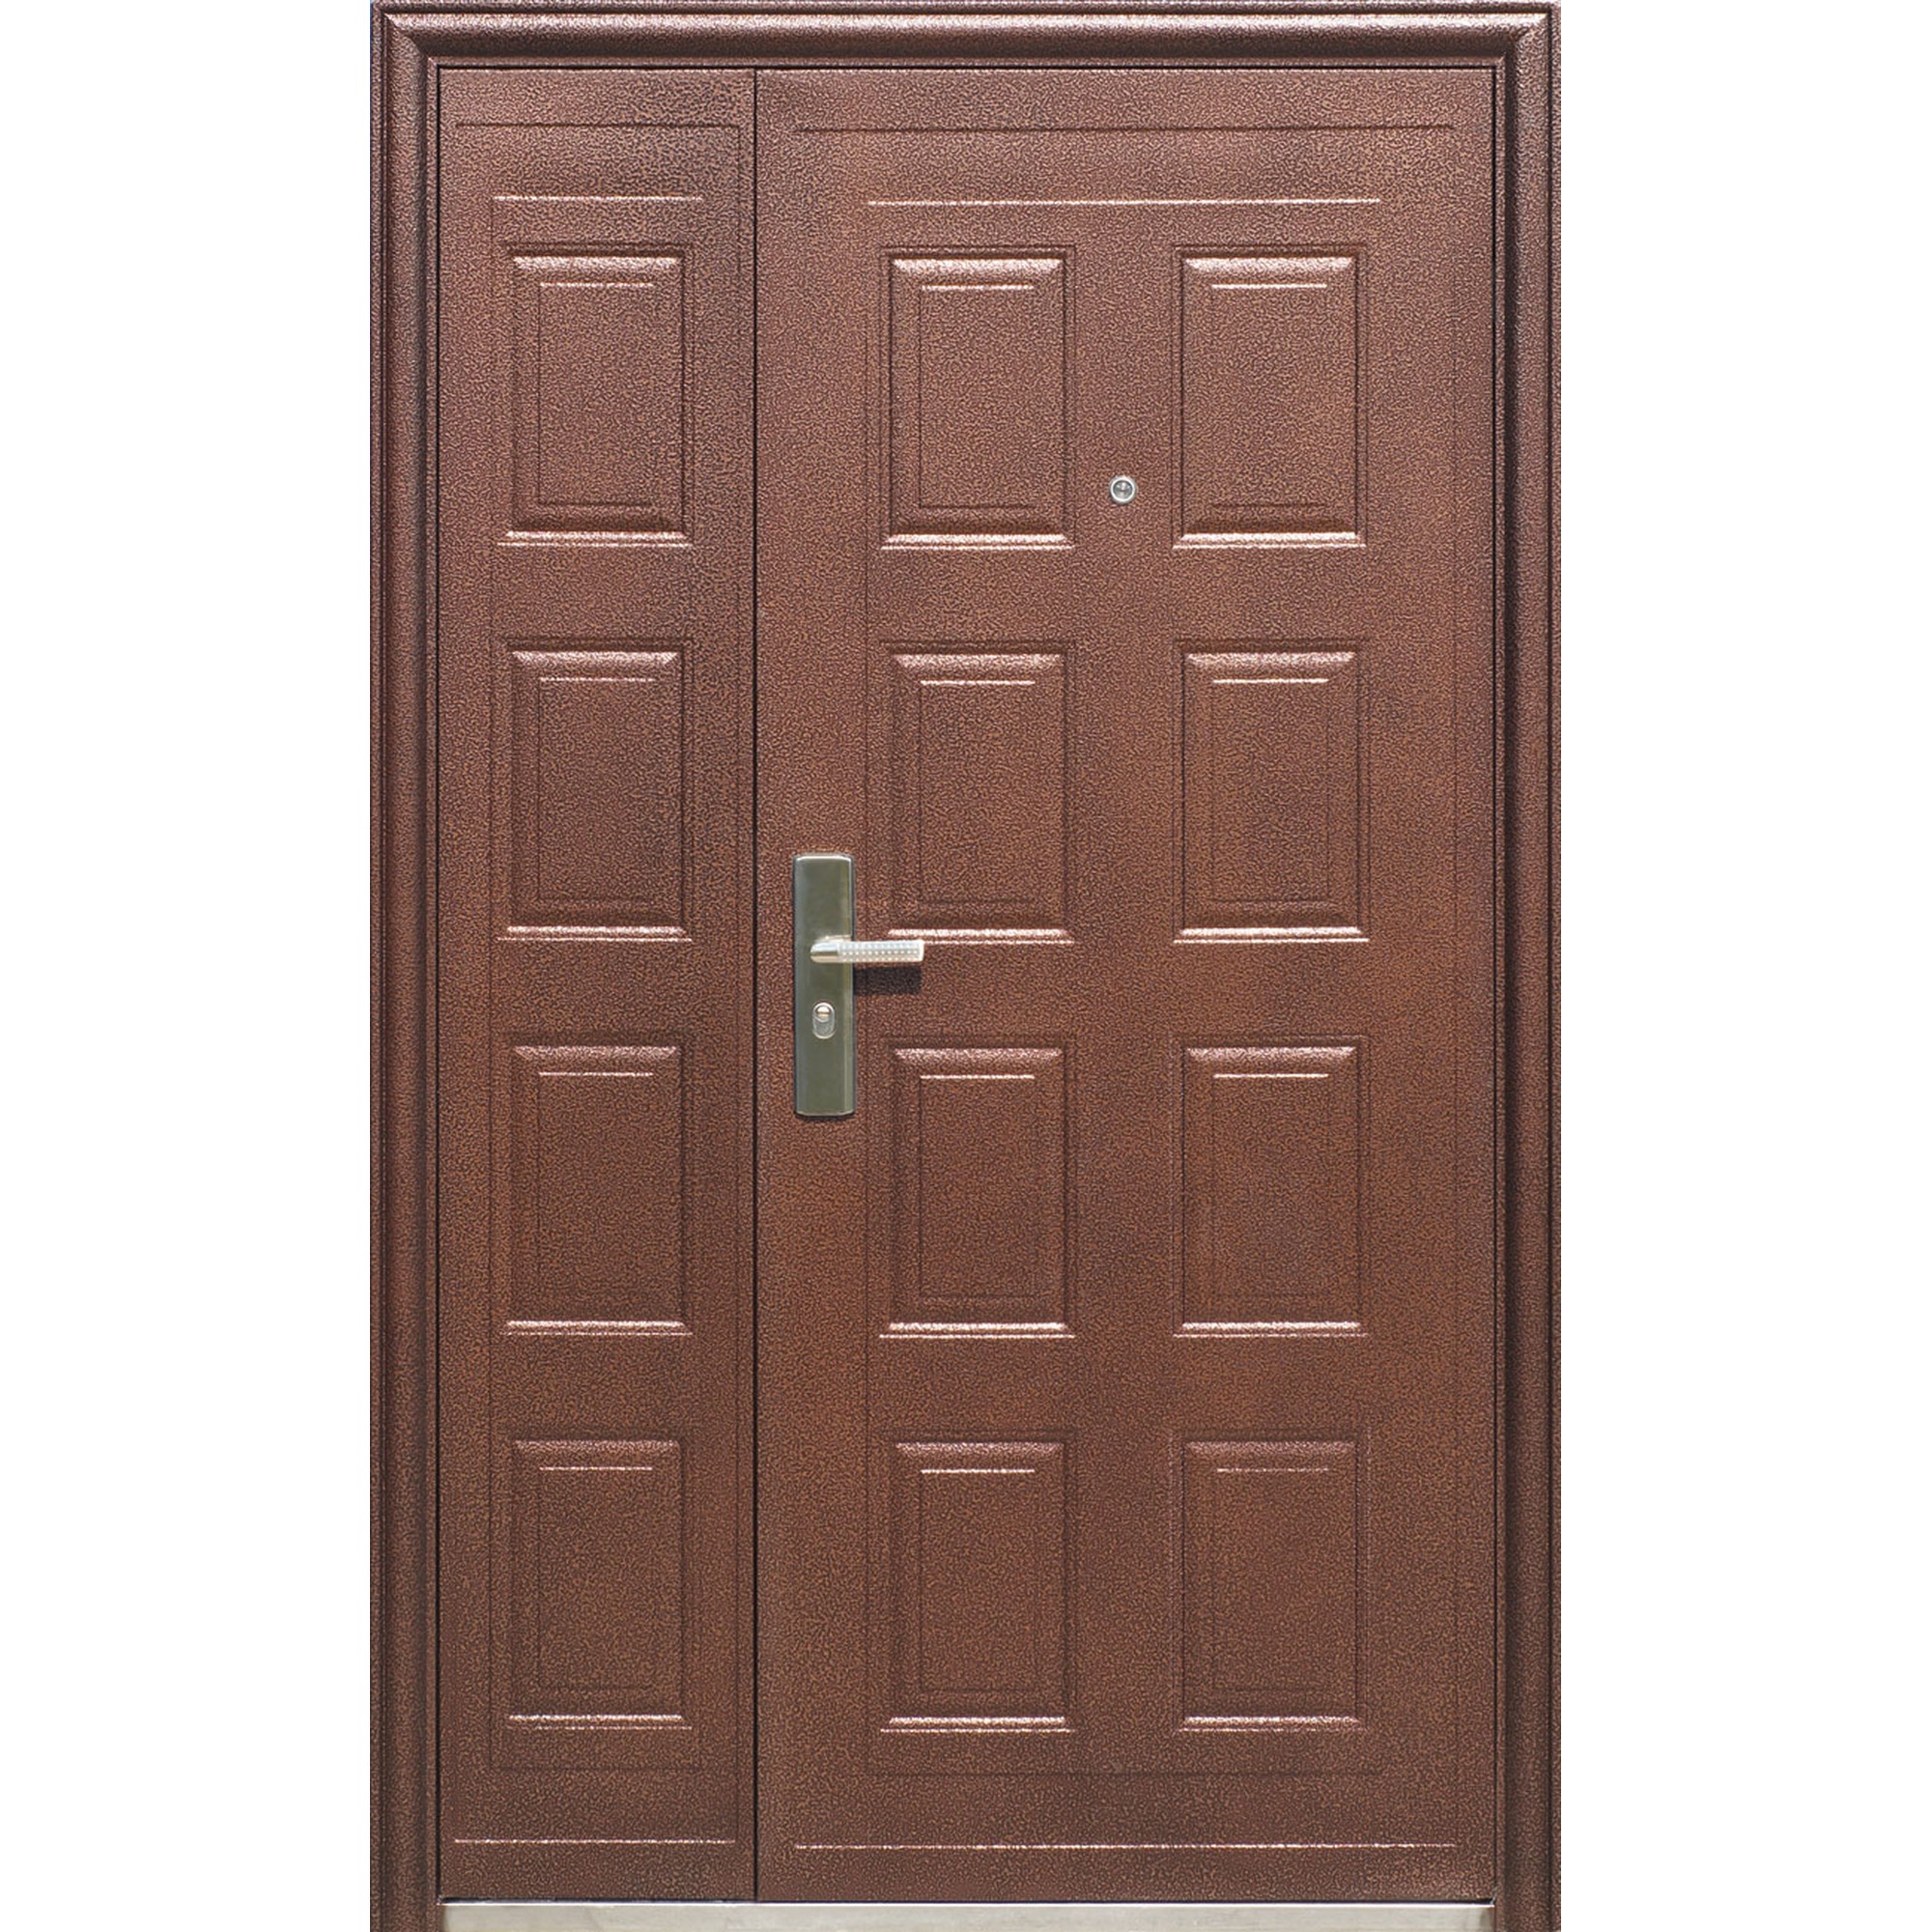 Купить входную дверь в калуге. Дверь входная металлическая Toodoors 801. Kaiser k700 дверь входная. Дверь входная 1200х2200. Дверь входная металлическая 2200х1200.